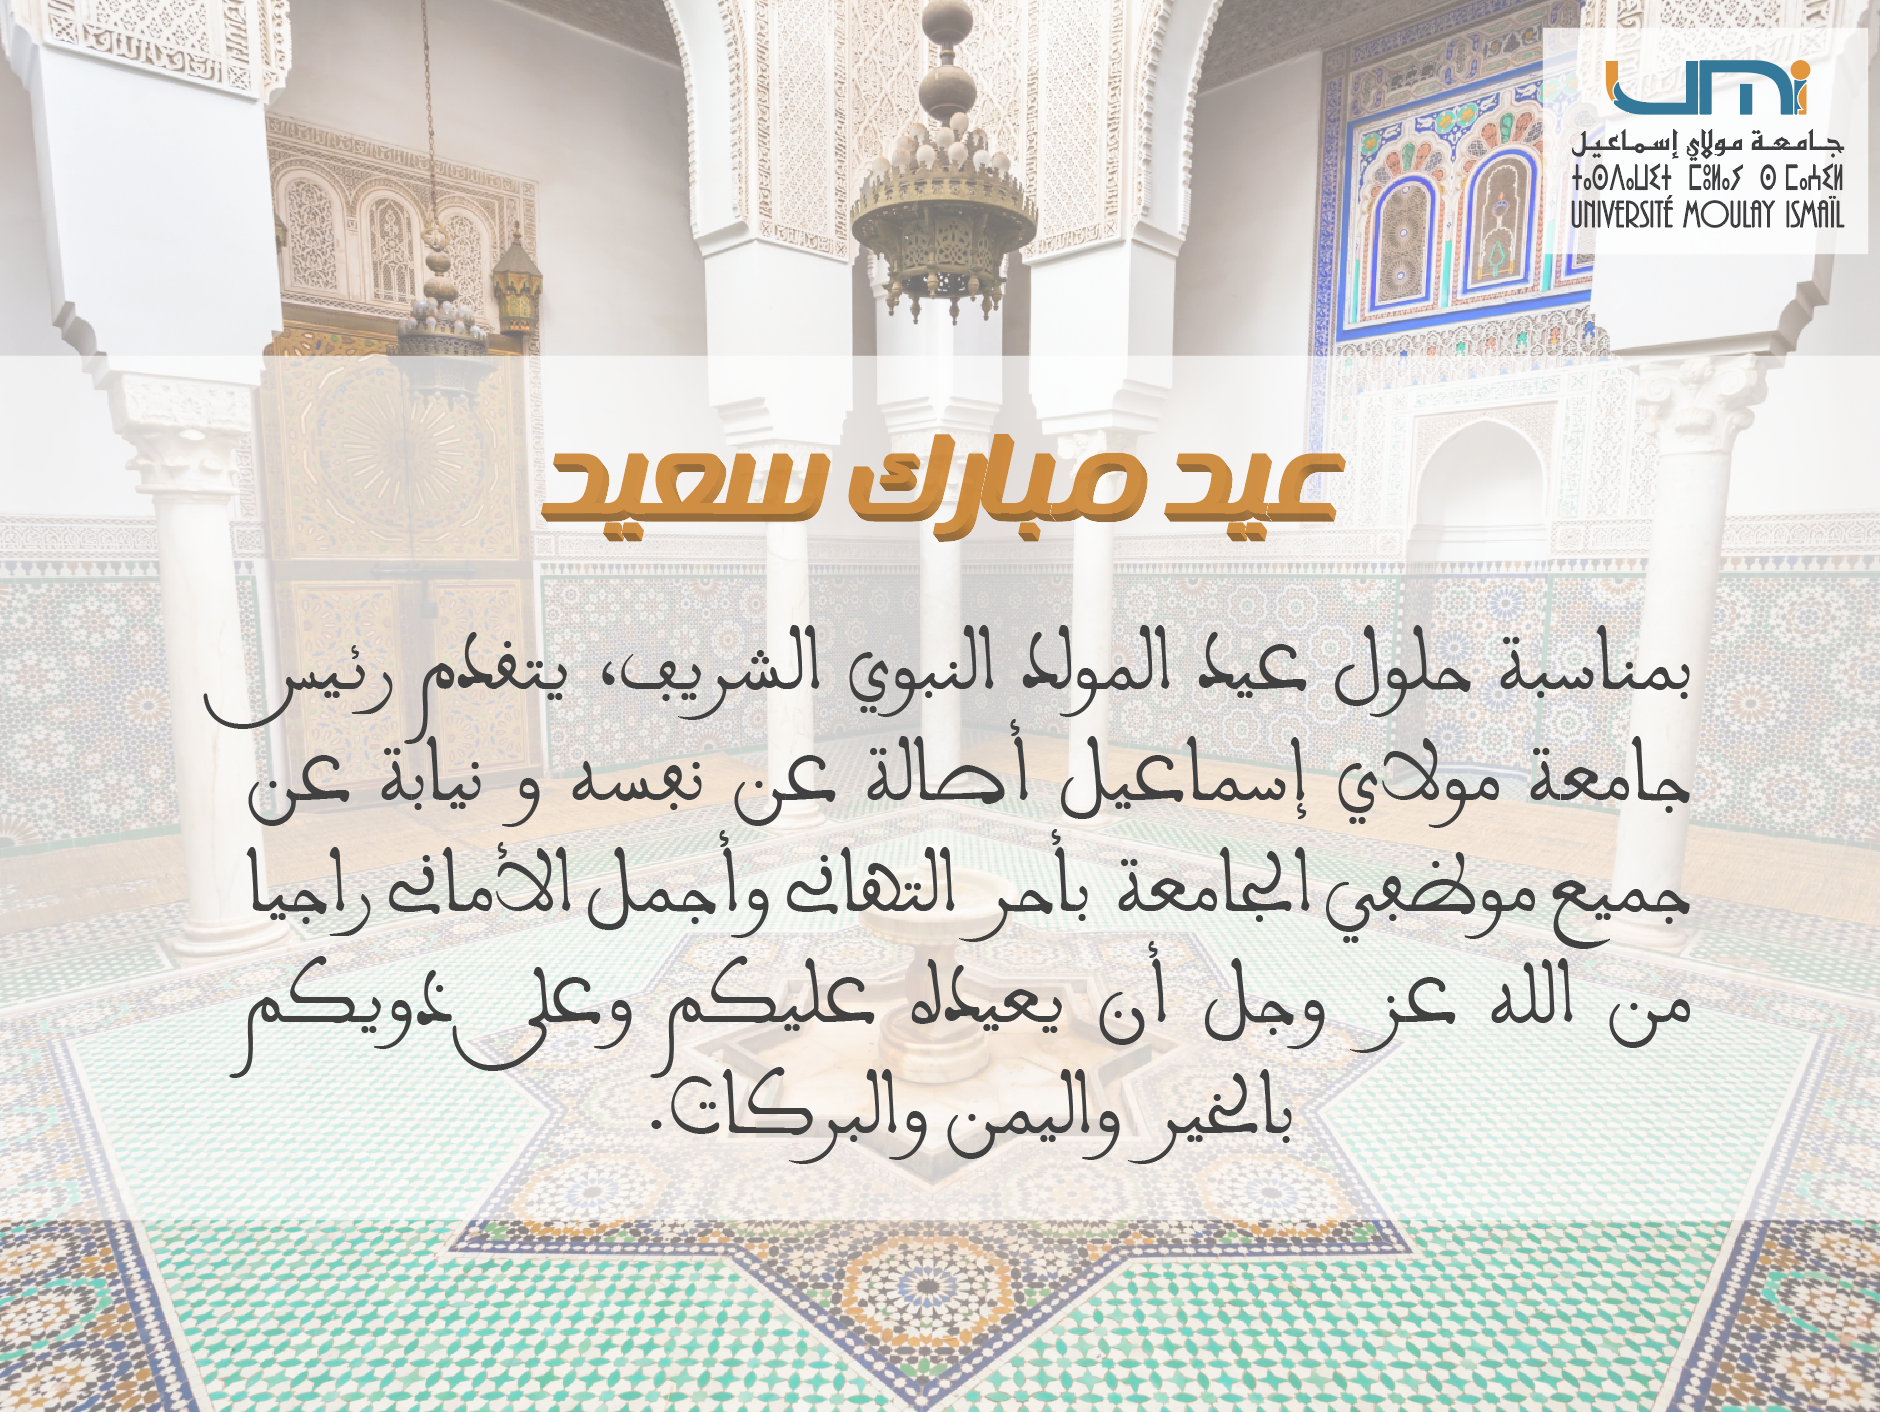 عيد المولد النبوي الشريف Universite Moulay Ismail جامعة مولاي إسماعيل